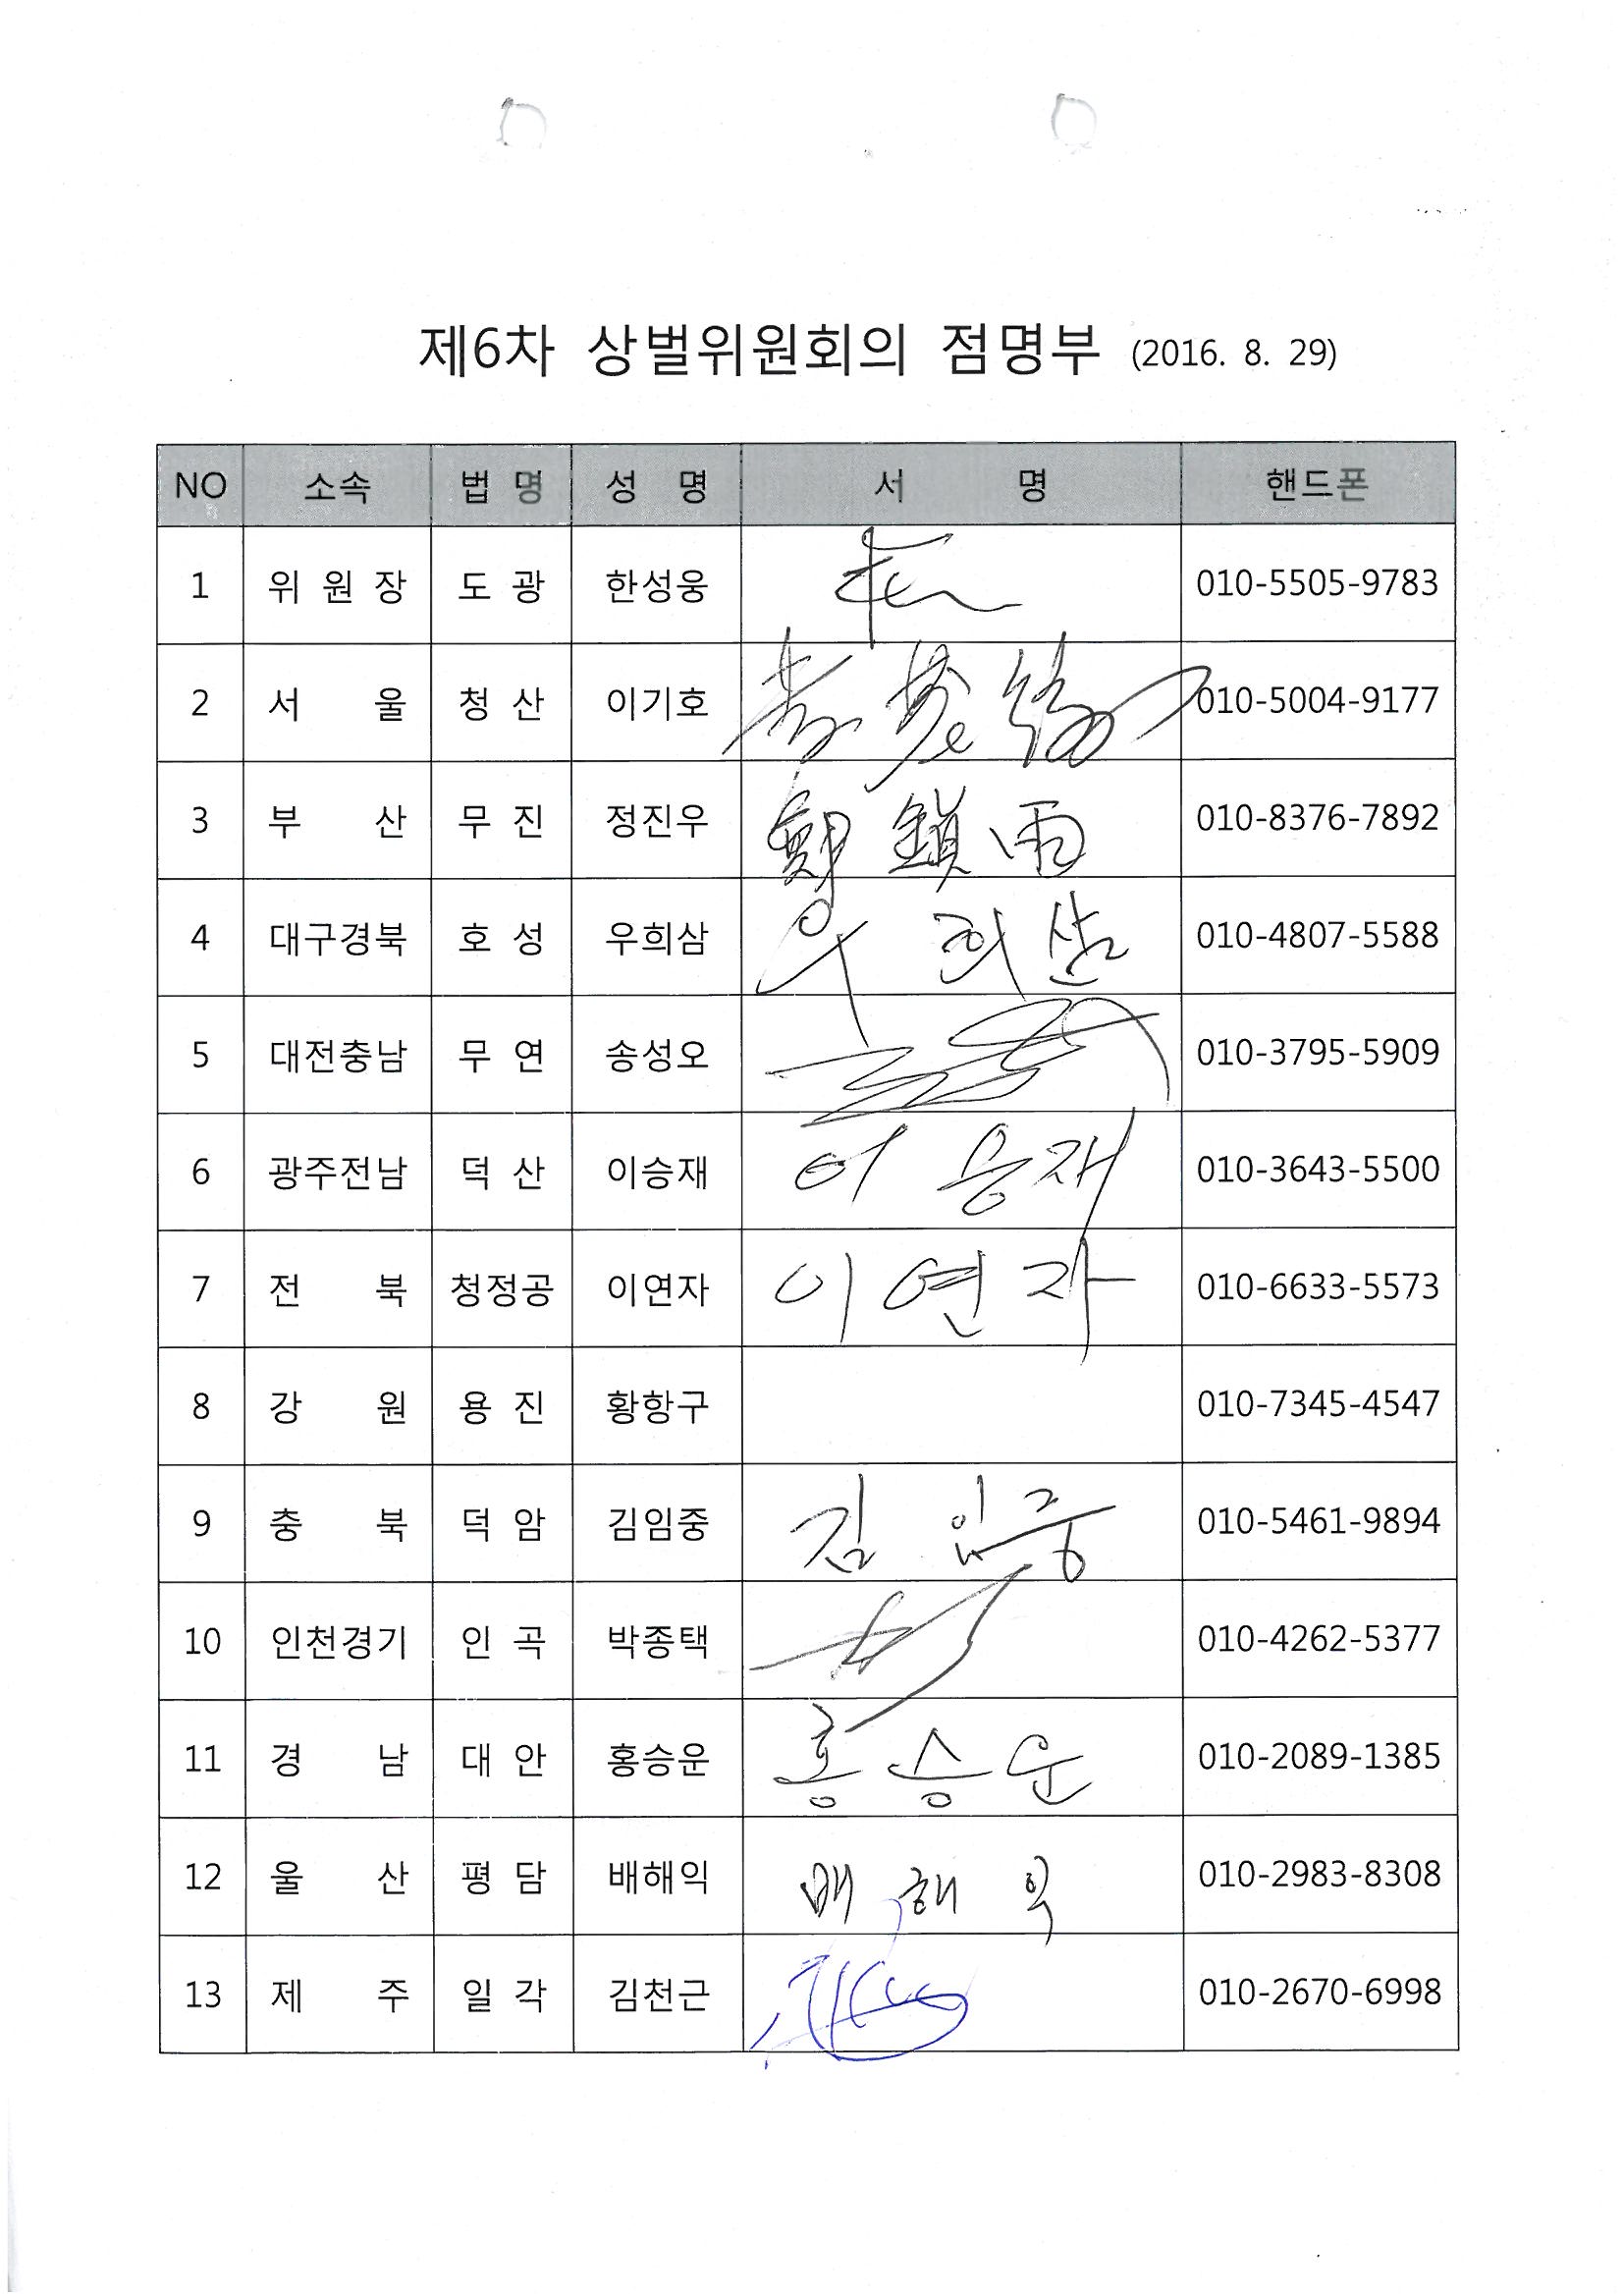 제6차 상벌위원회의 점명부 스캔(8.29).jpg